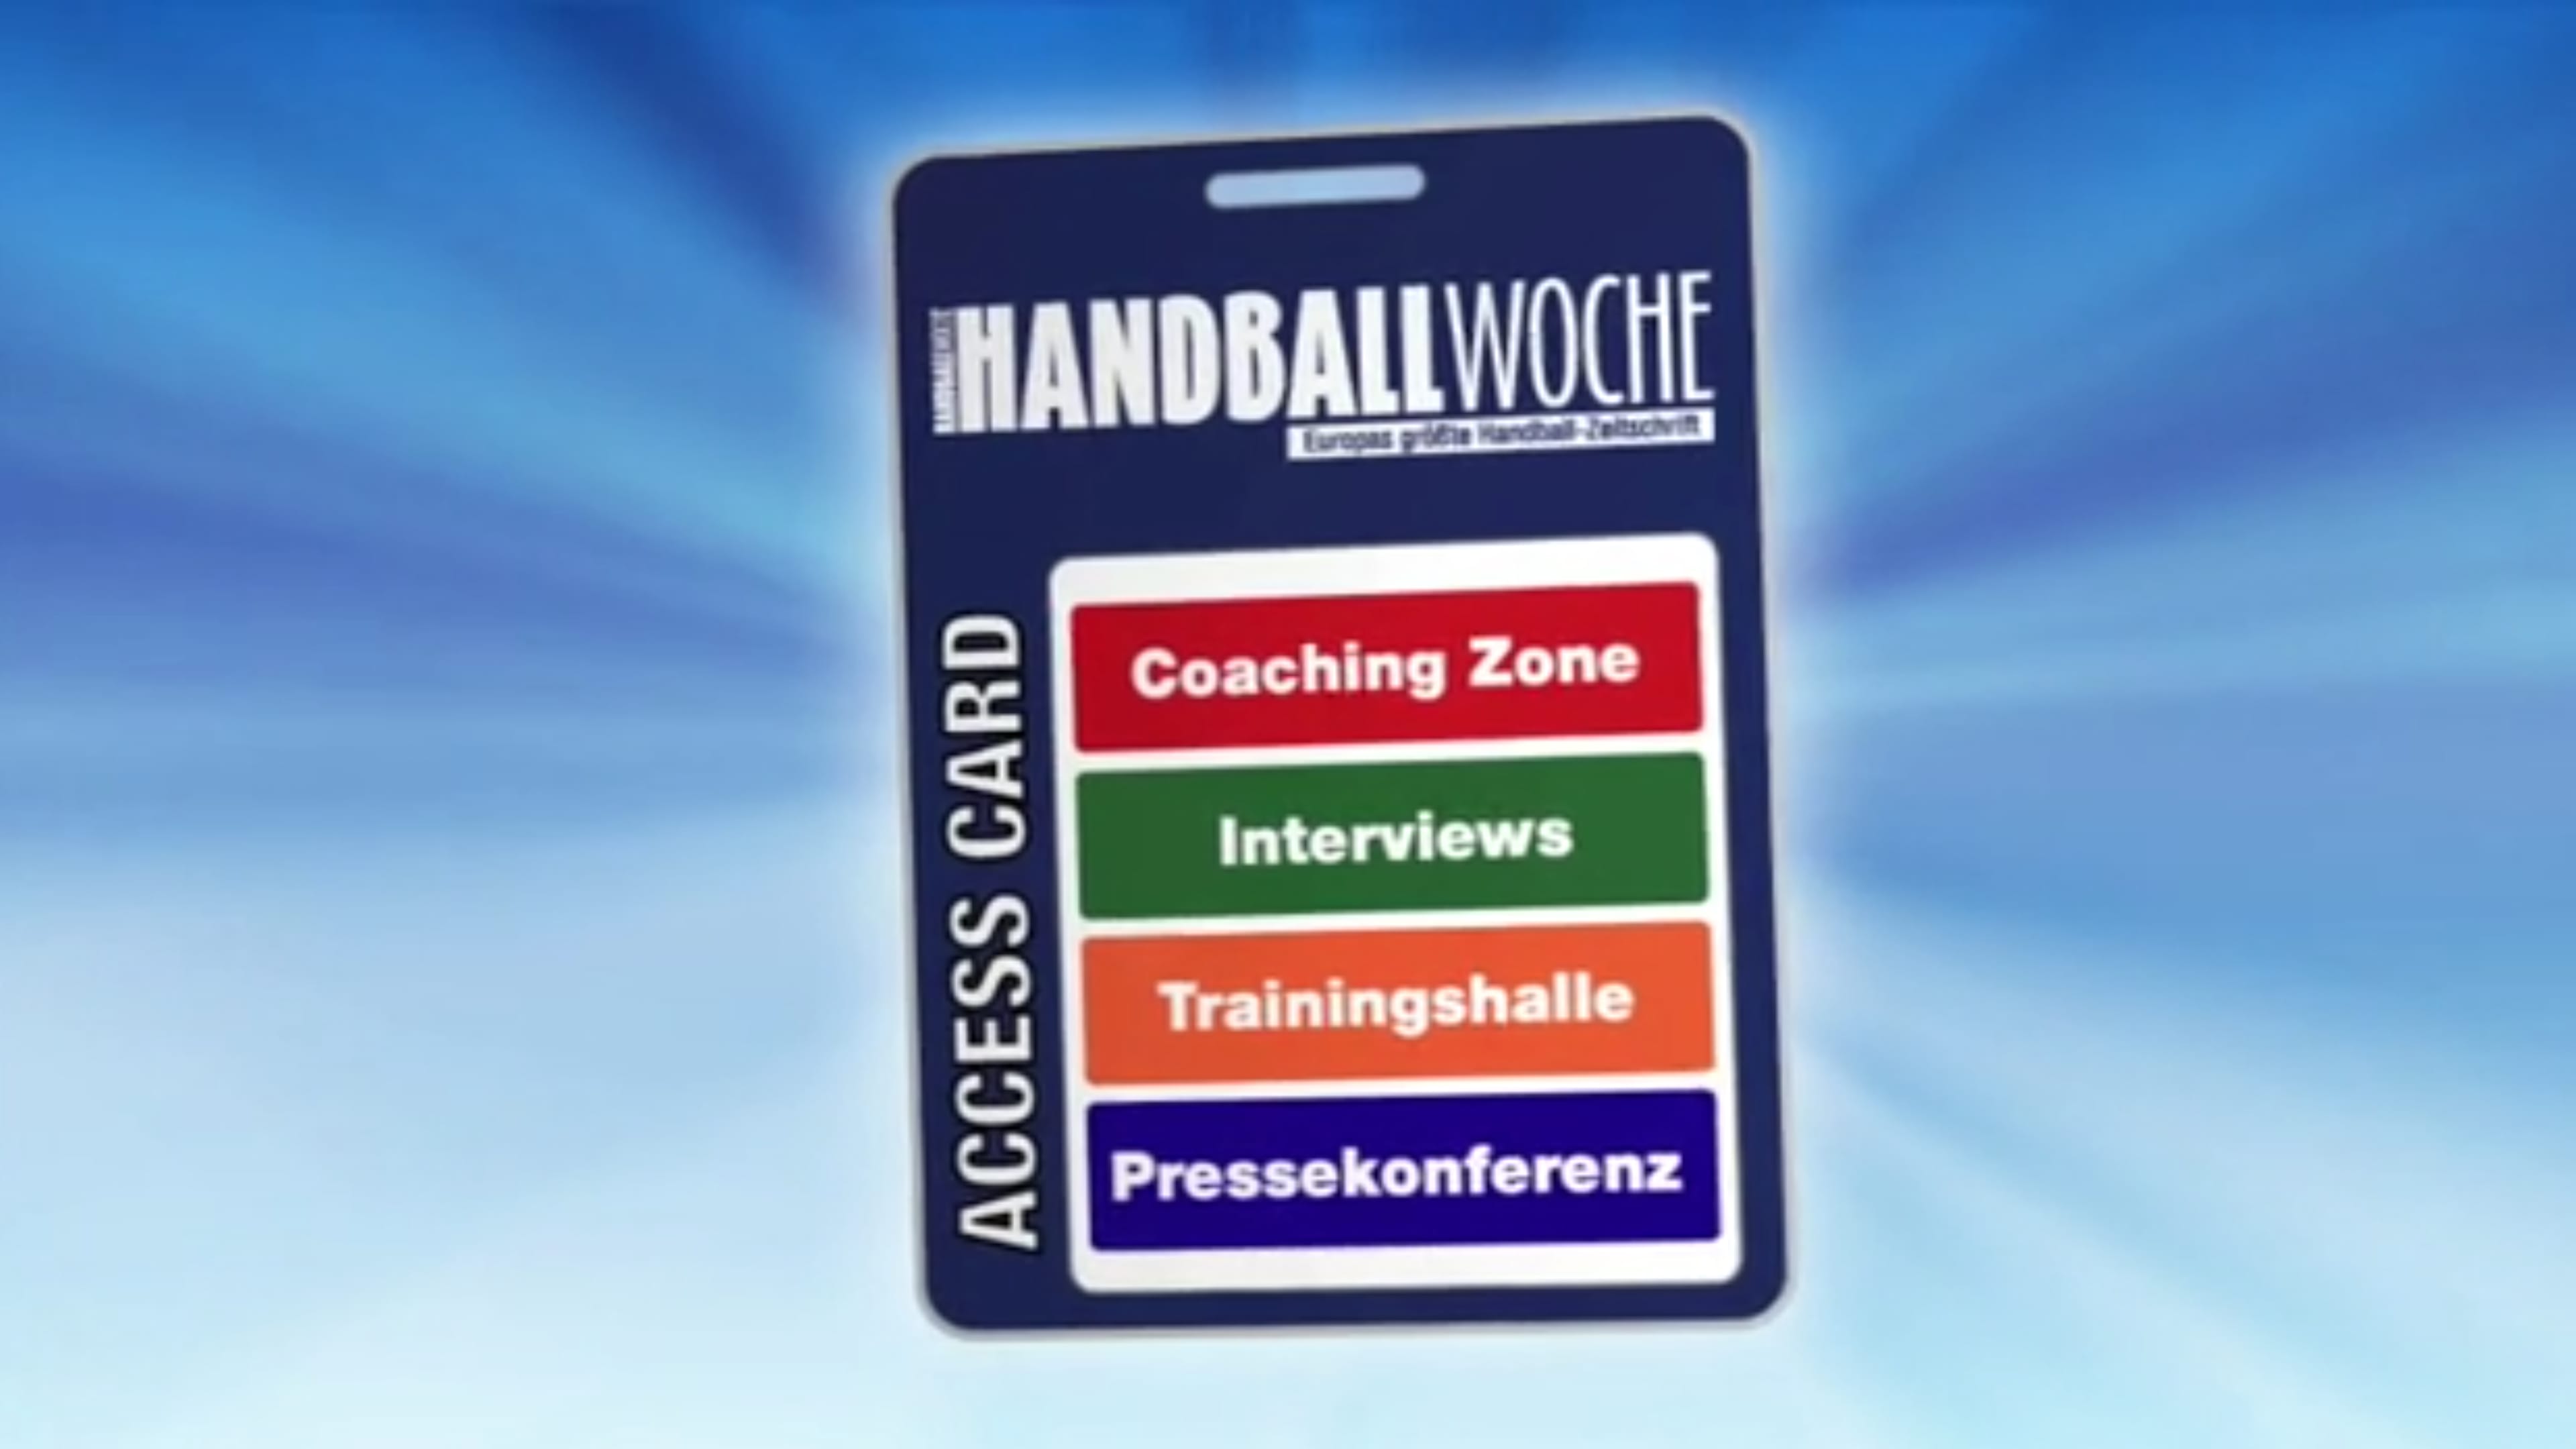 Die Accesscard der Handballwoche